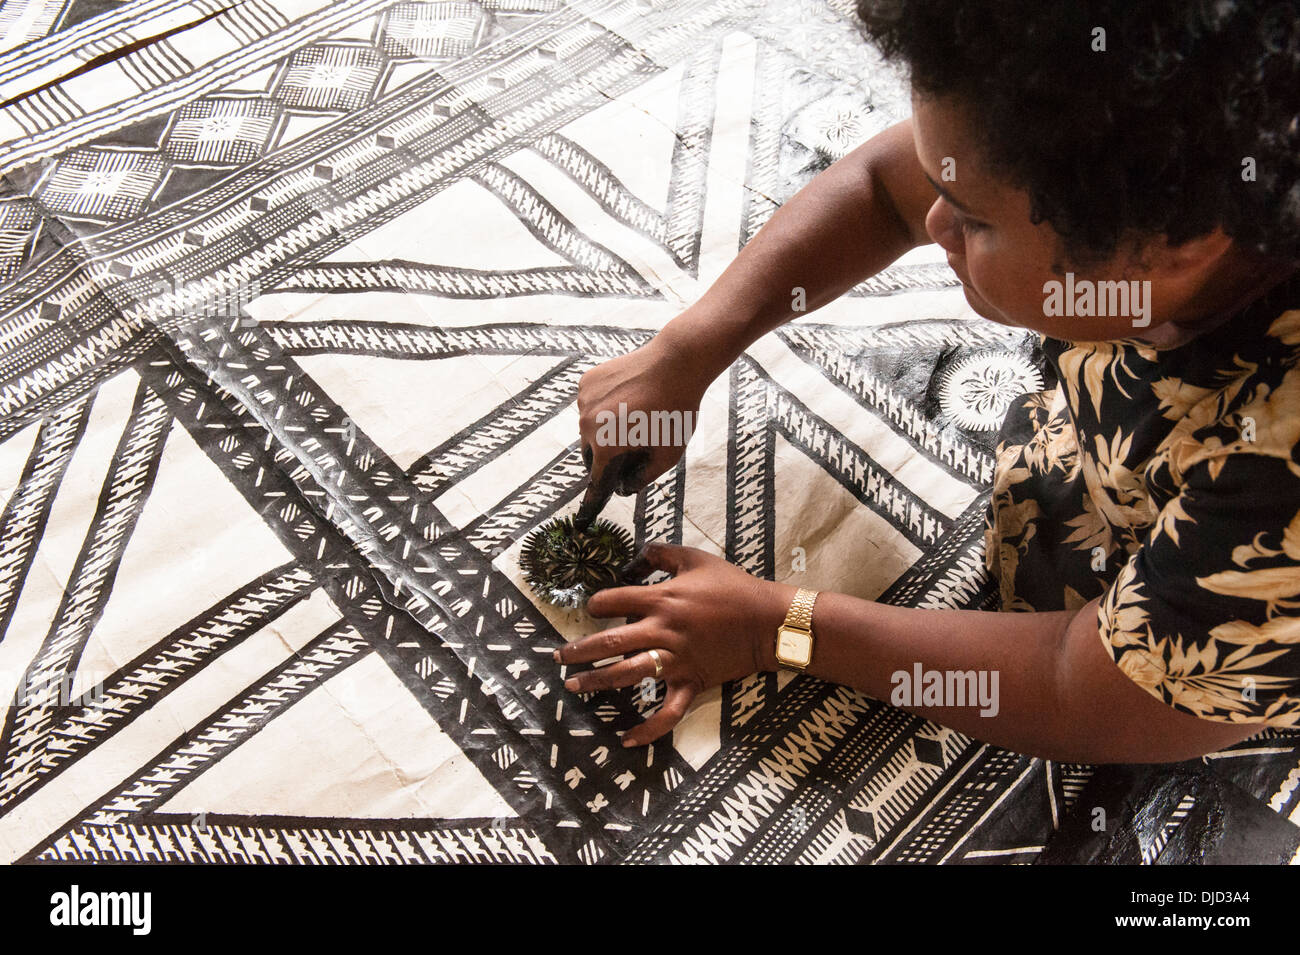 Impression sur Leba Cava pochoirs tissu d'écorce faite en battant le blanc intérieure de l'écorce du mûrier à papier bush. Namuka-I-Lau, à Fidji Banque D'Images